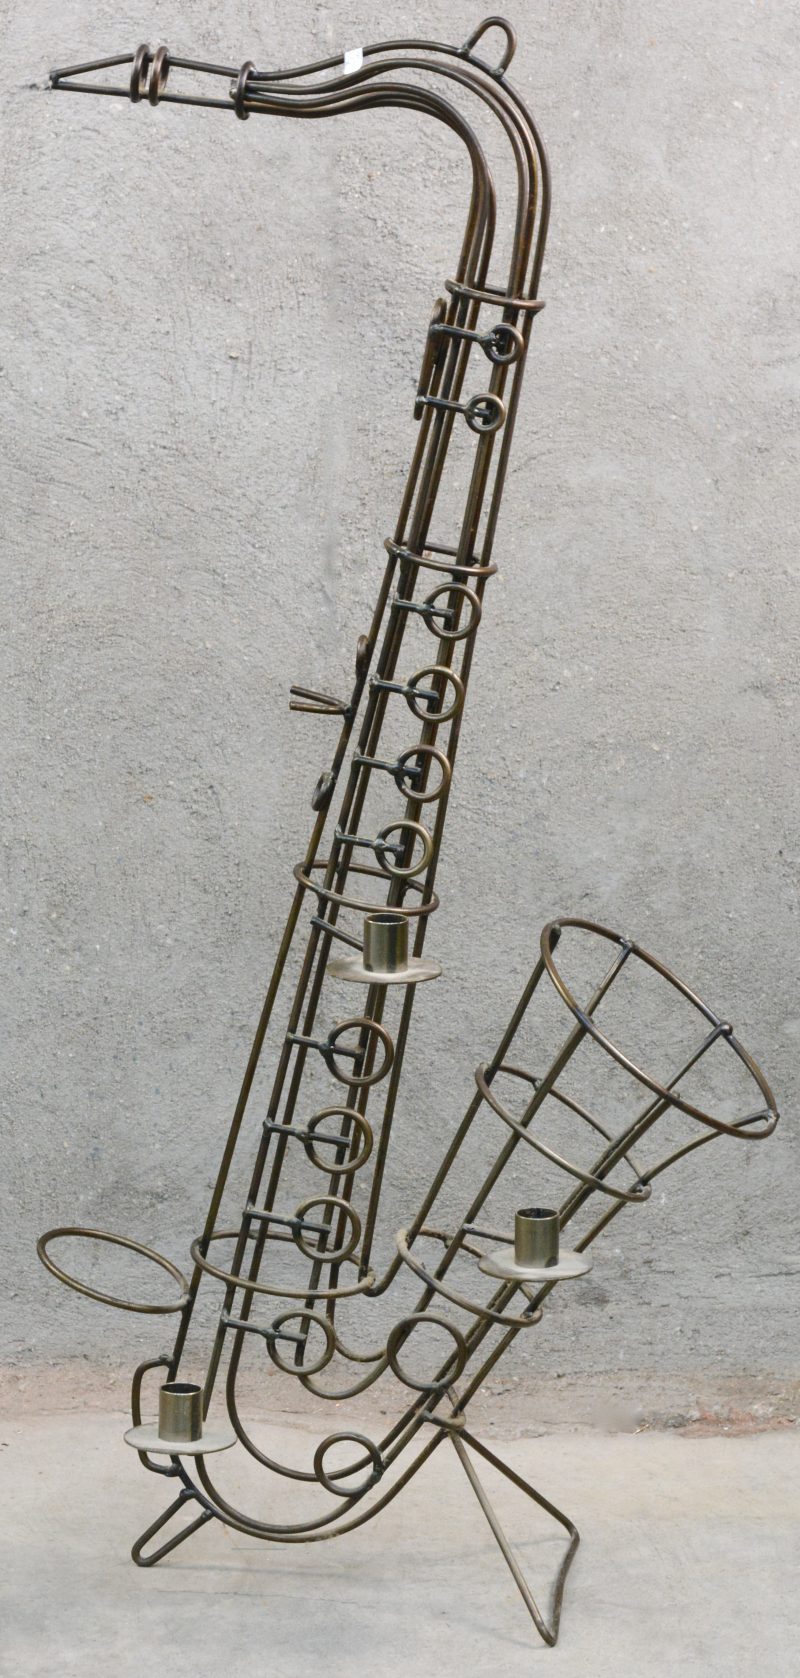 Kandelaar in de vorm van een saxofoon van smeedijzer.